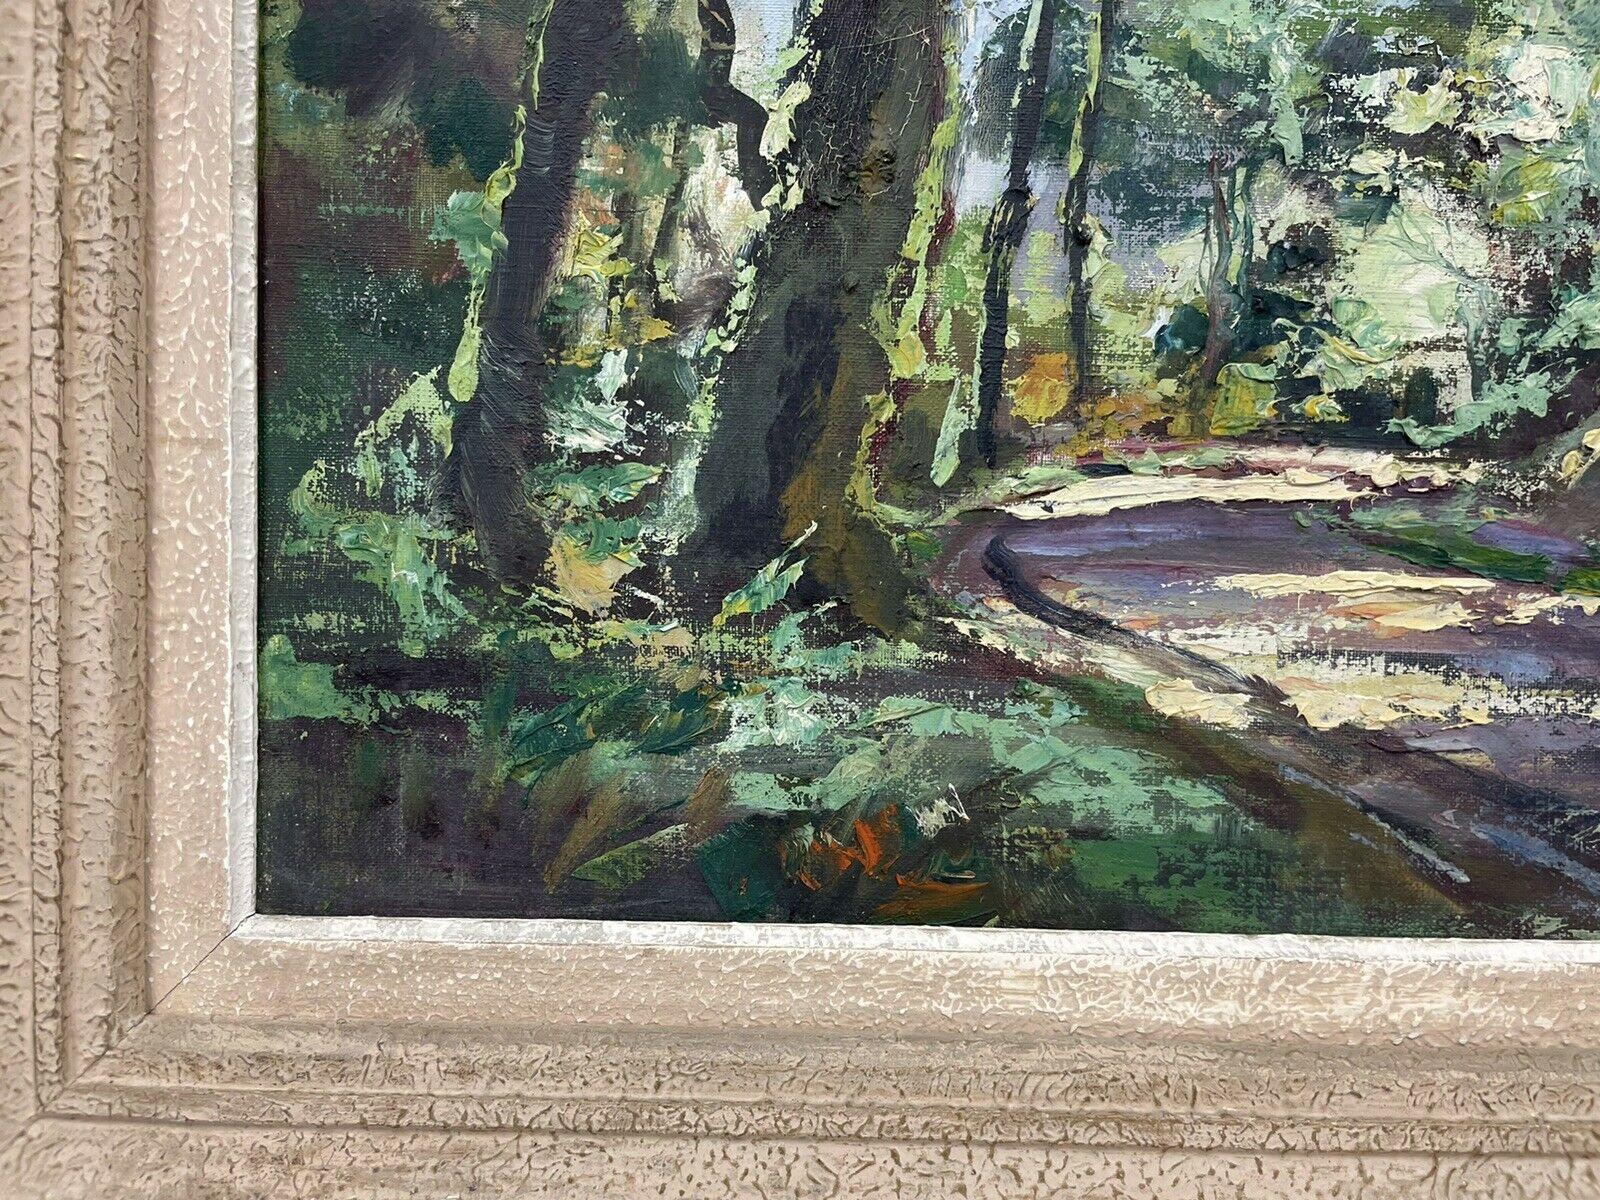 Artistics/ School : Robert Falcucci (français 1900-1989), signé dans le coin inférieur

Titre : Sentier forestier à la lumière tamisée

Moyen :  peinture à l'huile sur toile, encadrée

Taille :  toile : 18 x 22 pouces, 26 x 29 pouces
       